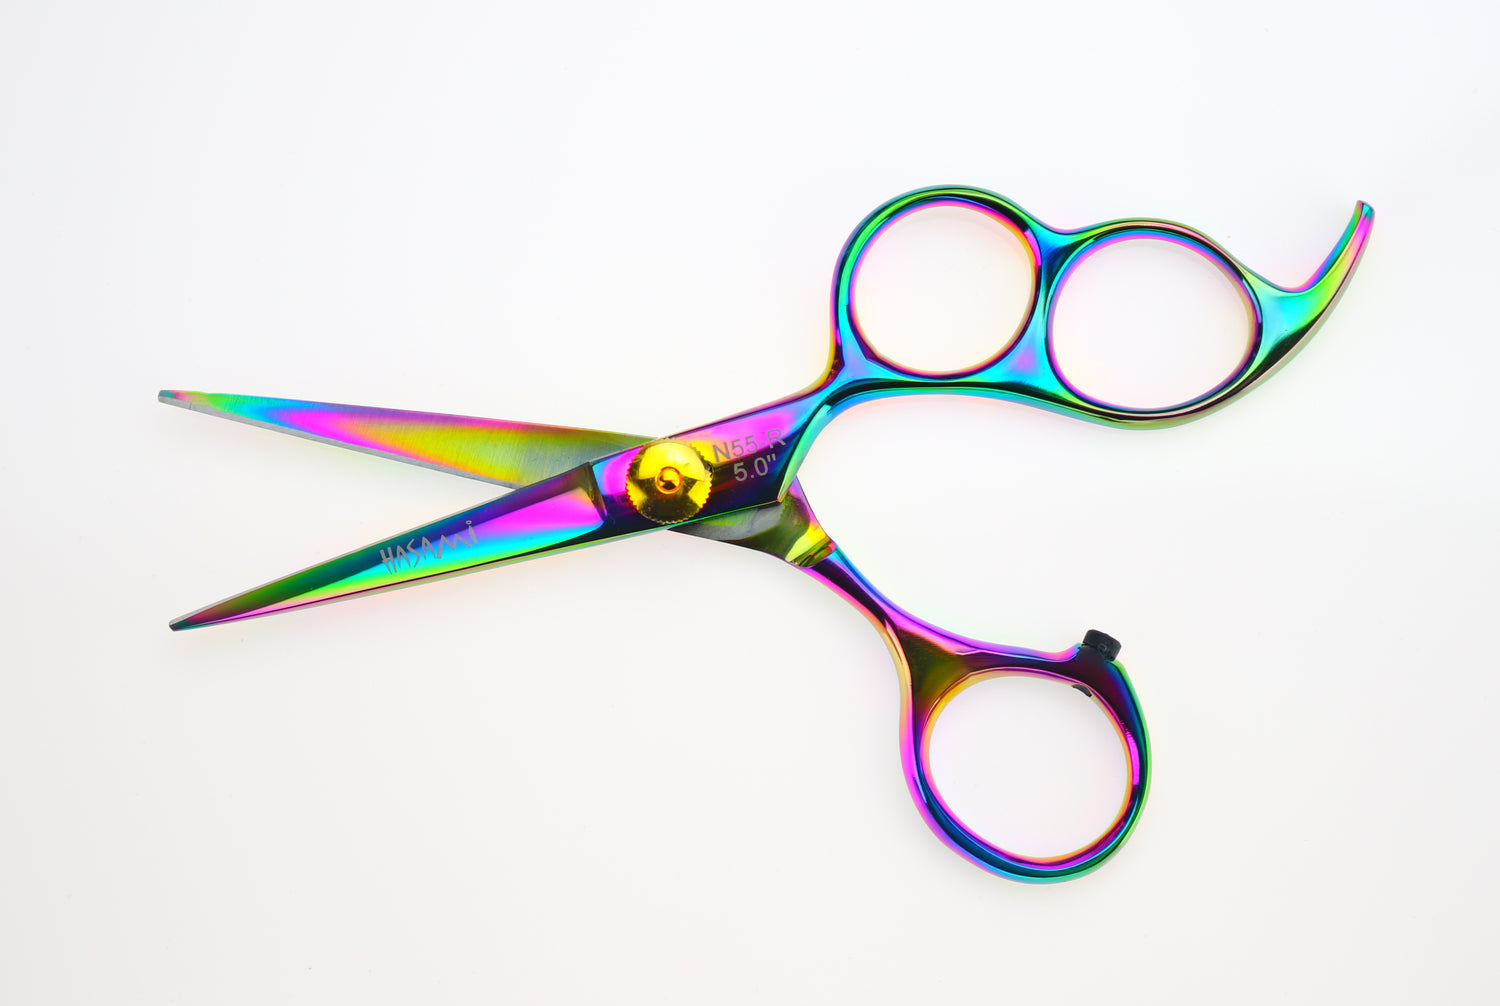 hair cuttery hair cutting scissors thinning hair shear left handed scissors shear scissors shears salon hair shears